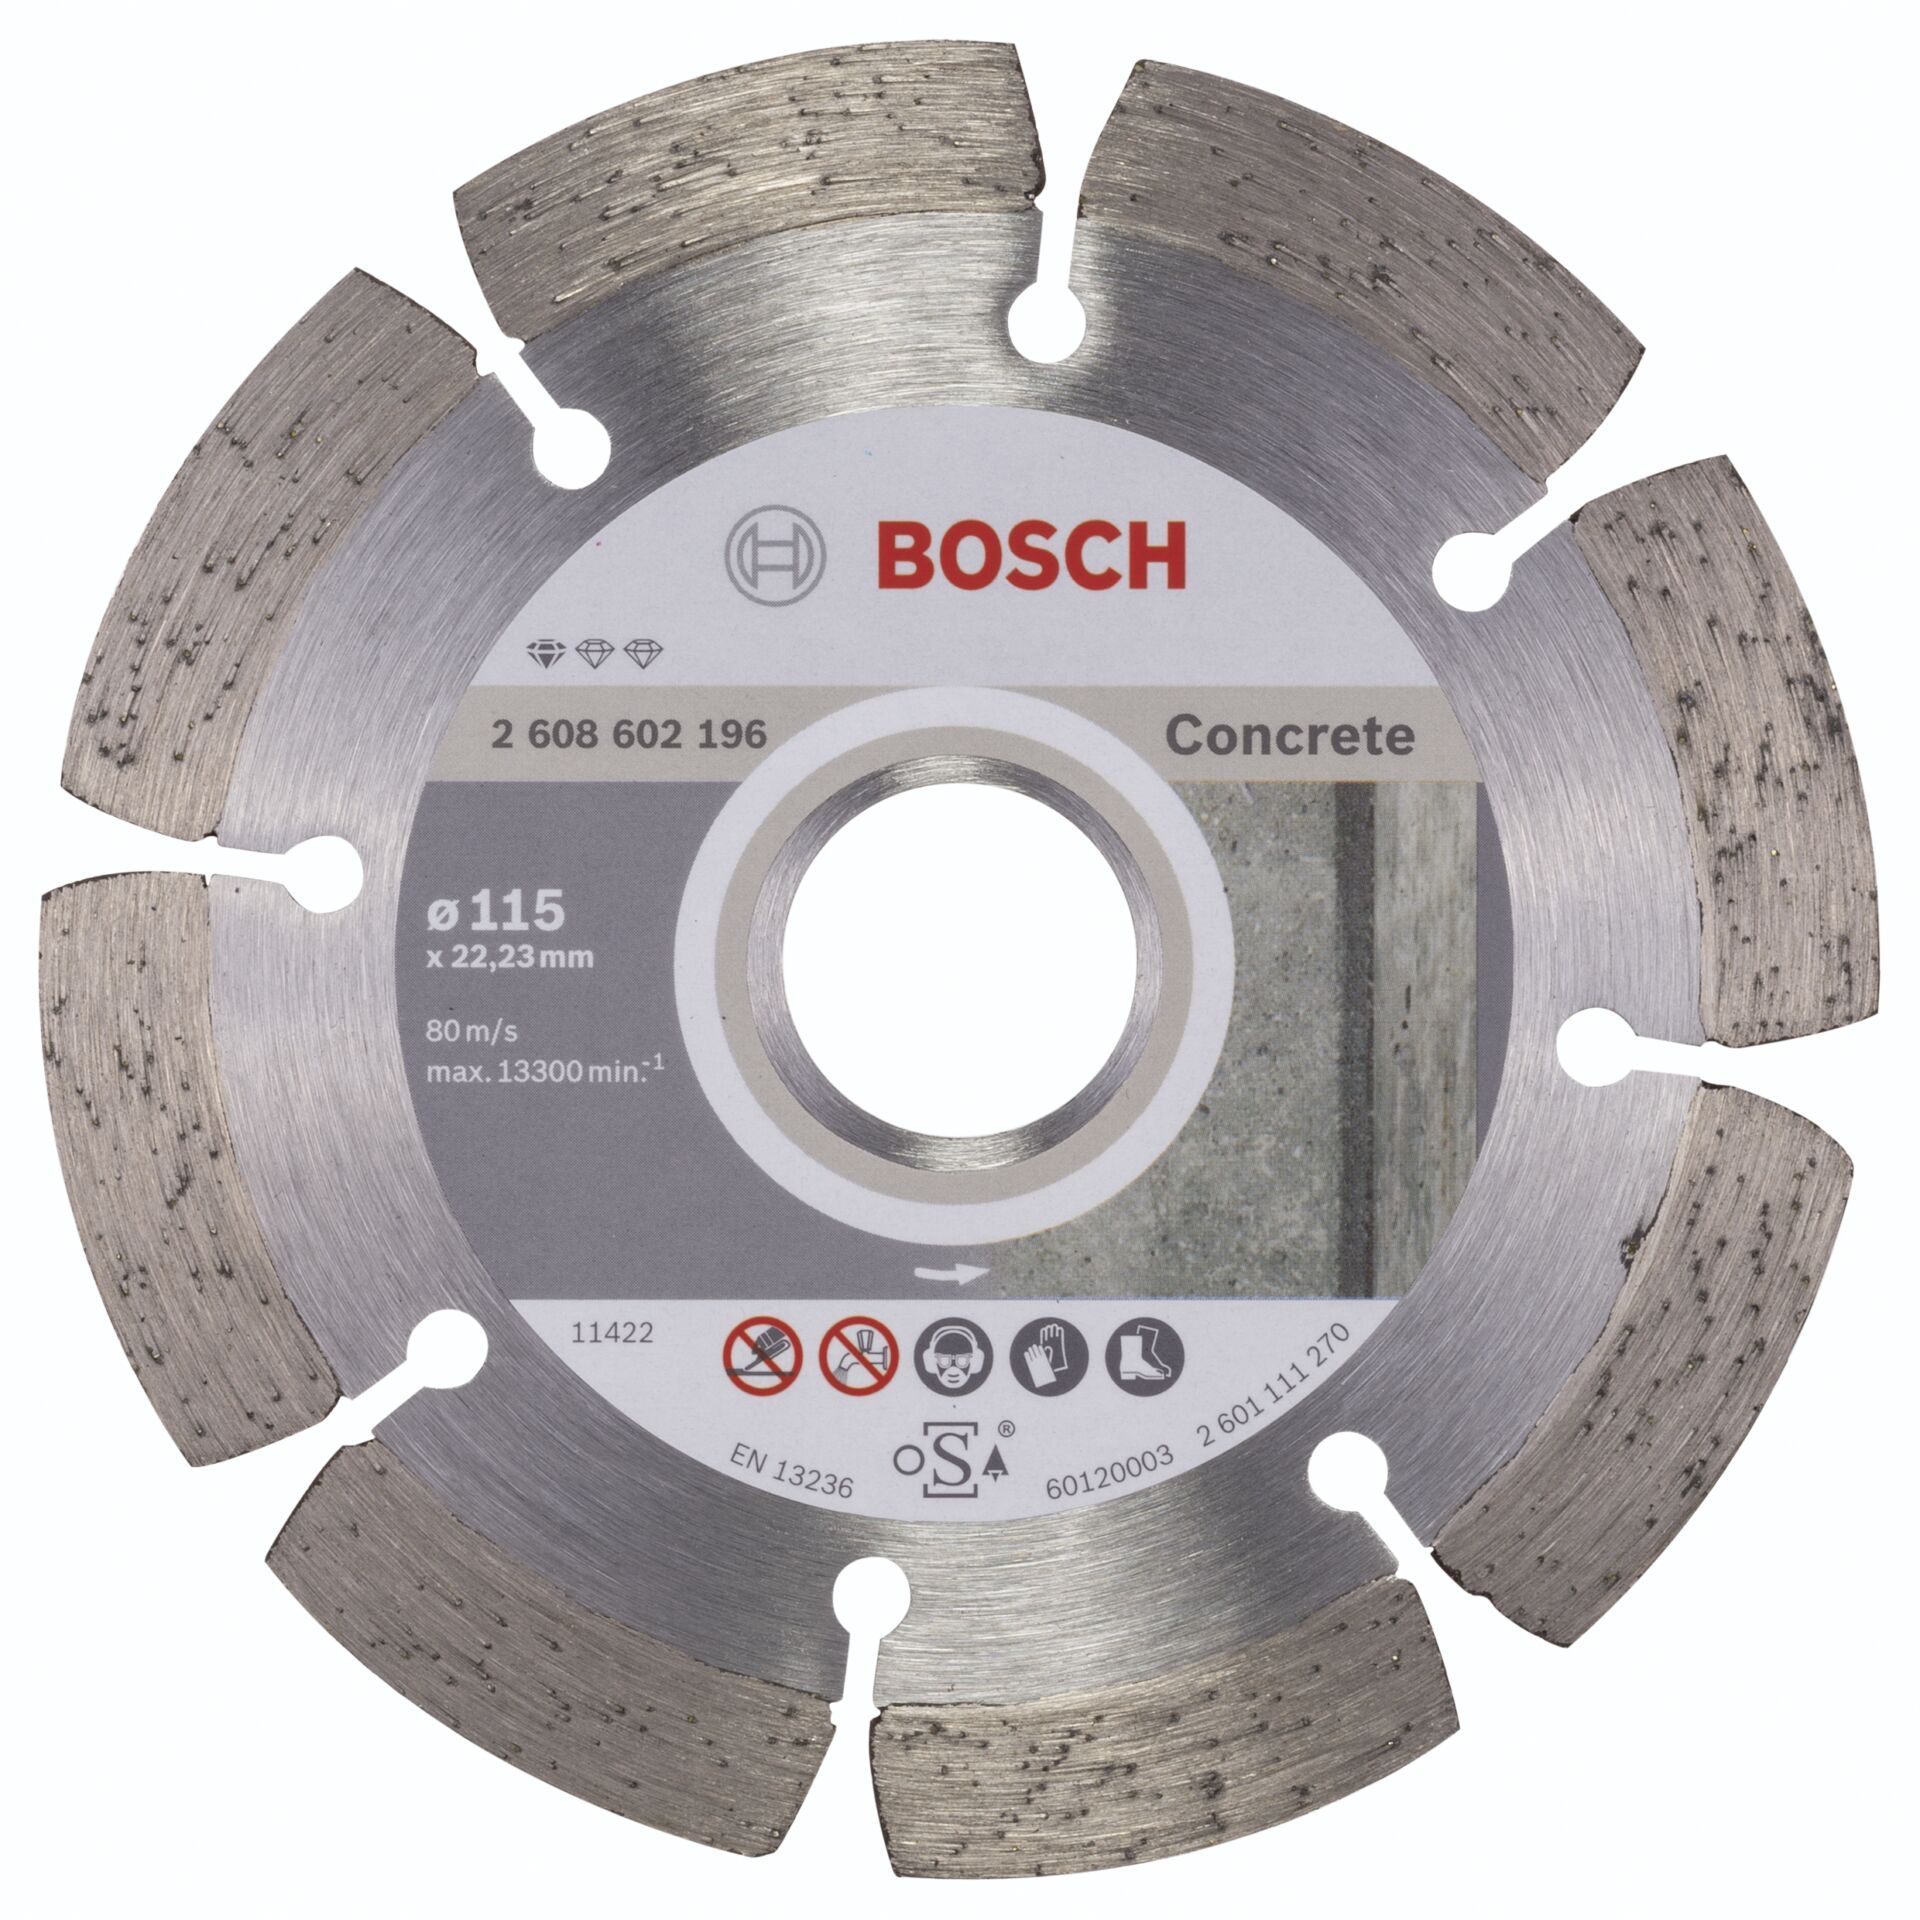 Bosch DIA-TS 115x22,23 Standard For Concrete